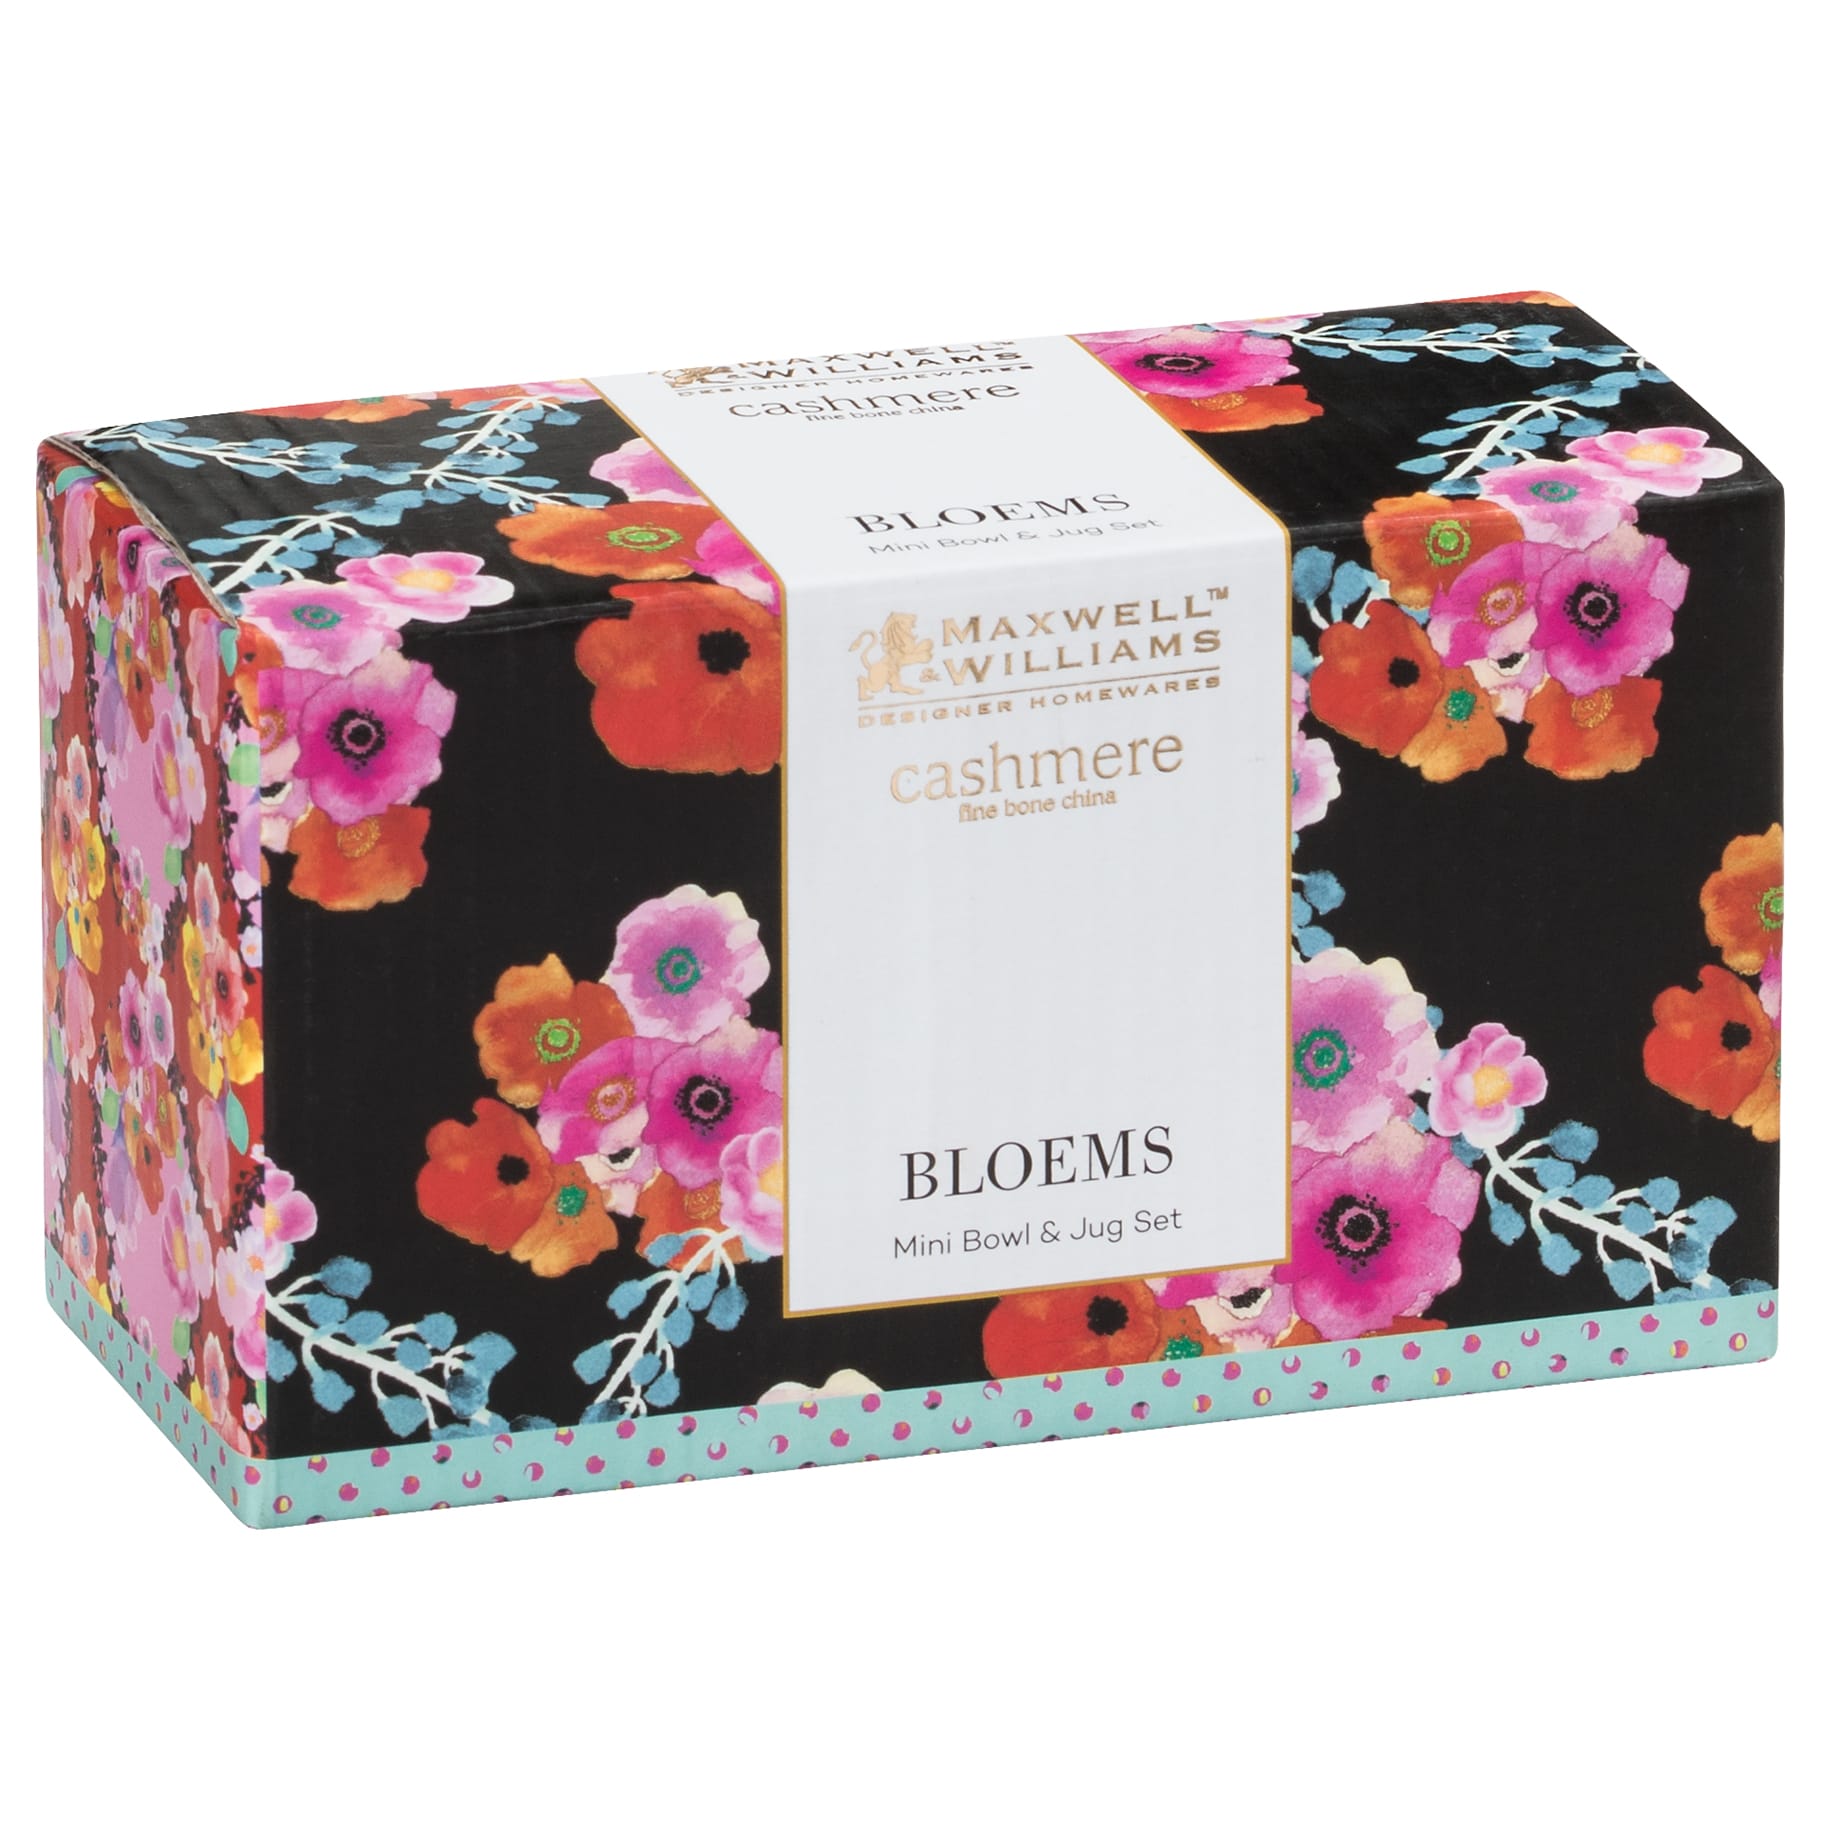 BLOEMS Milch/Zucker-Set, Bone China Porzellan, in Geschenkbox